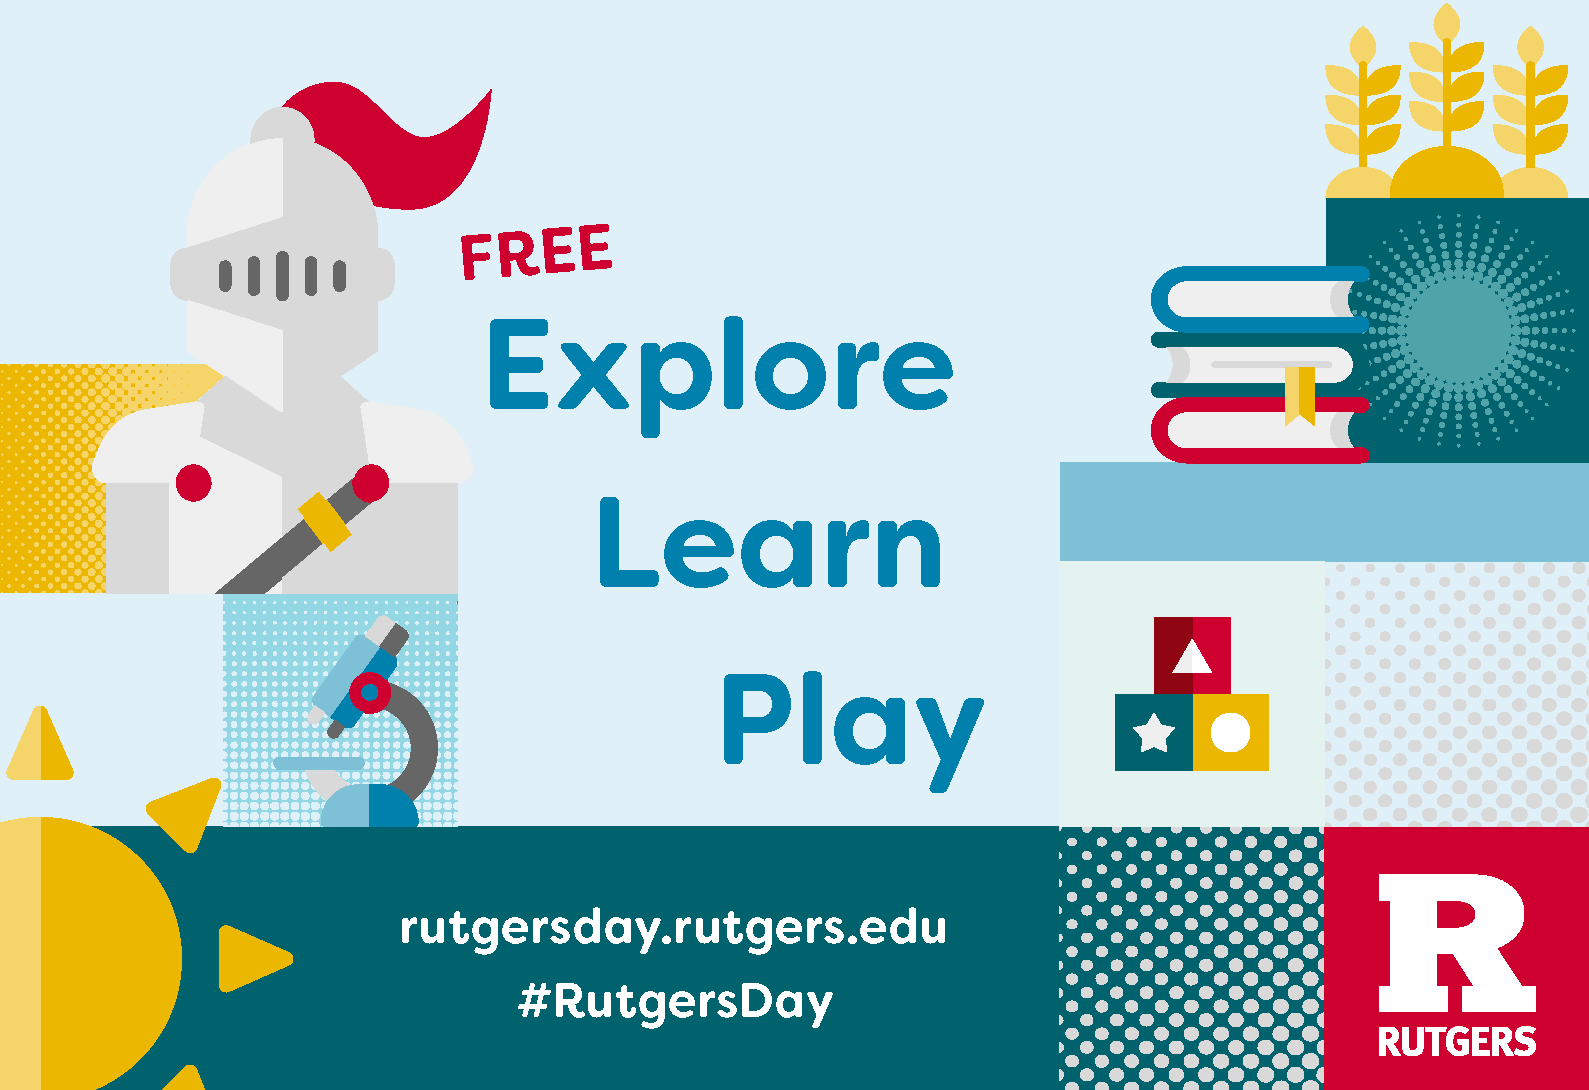 Free, Explore, Learn, Play, rutgersday.rutgers.edu, #Rutgers Day